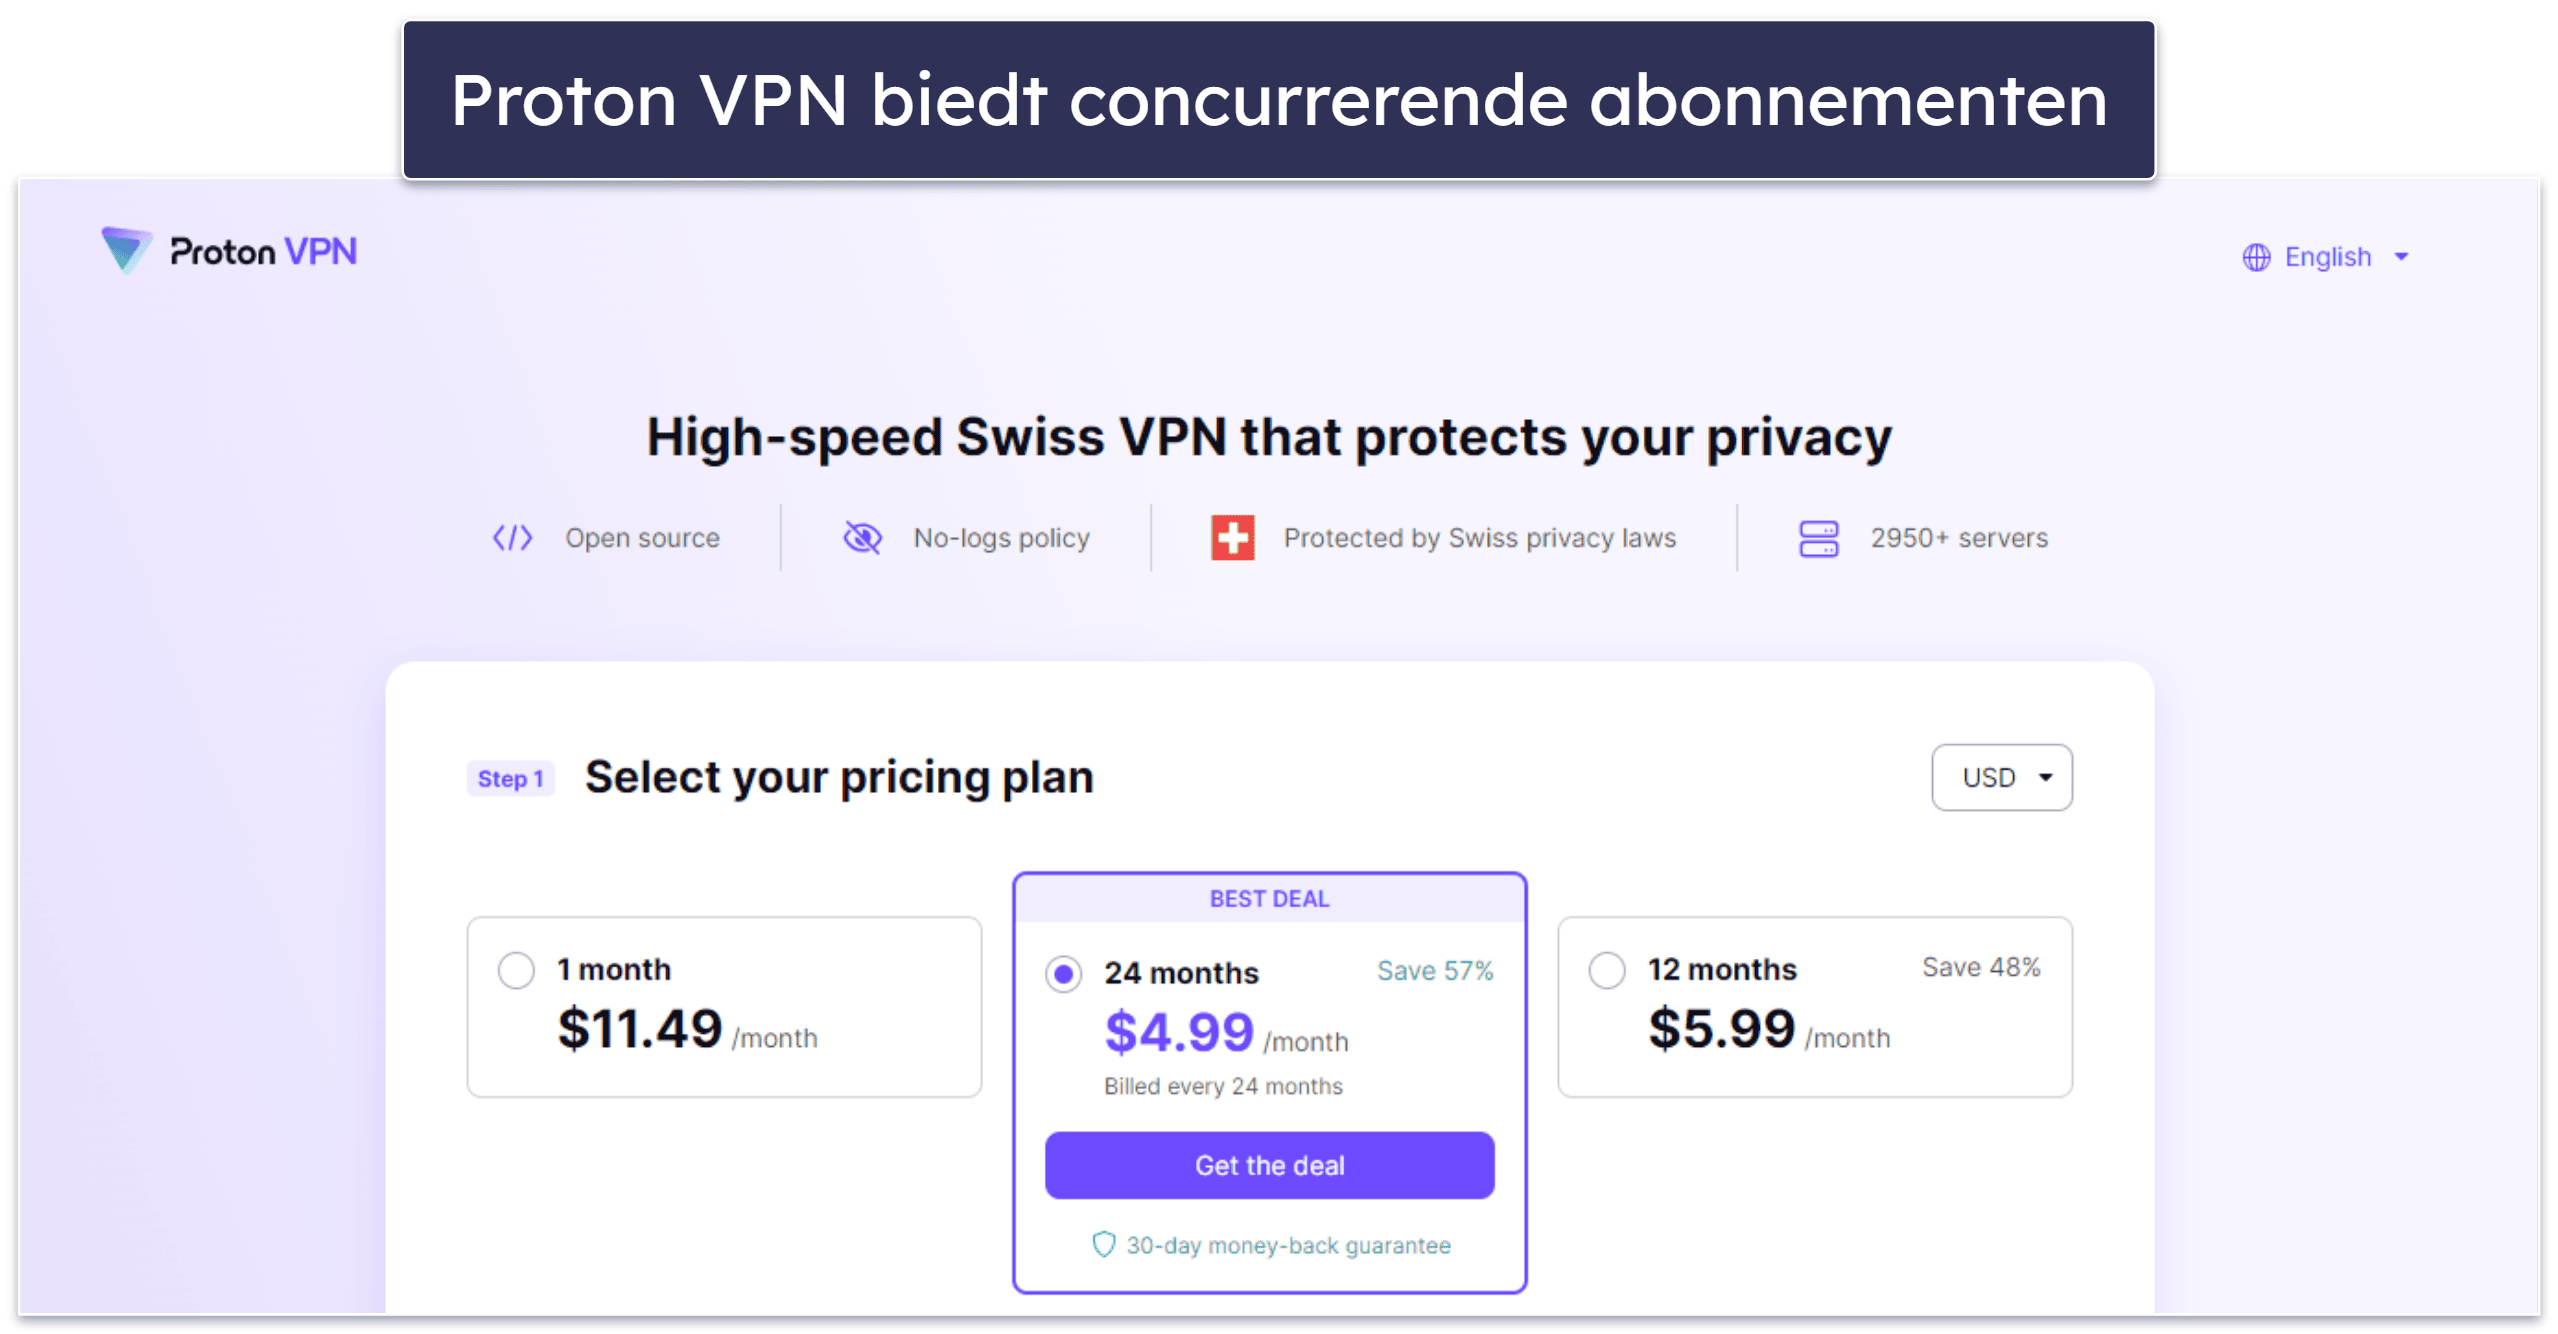 7. Proton VPN — Hoogwaardige beveiligings- en privacyfuncties